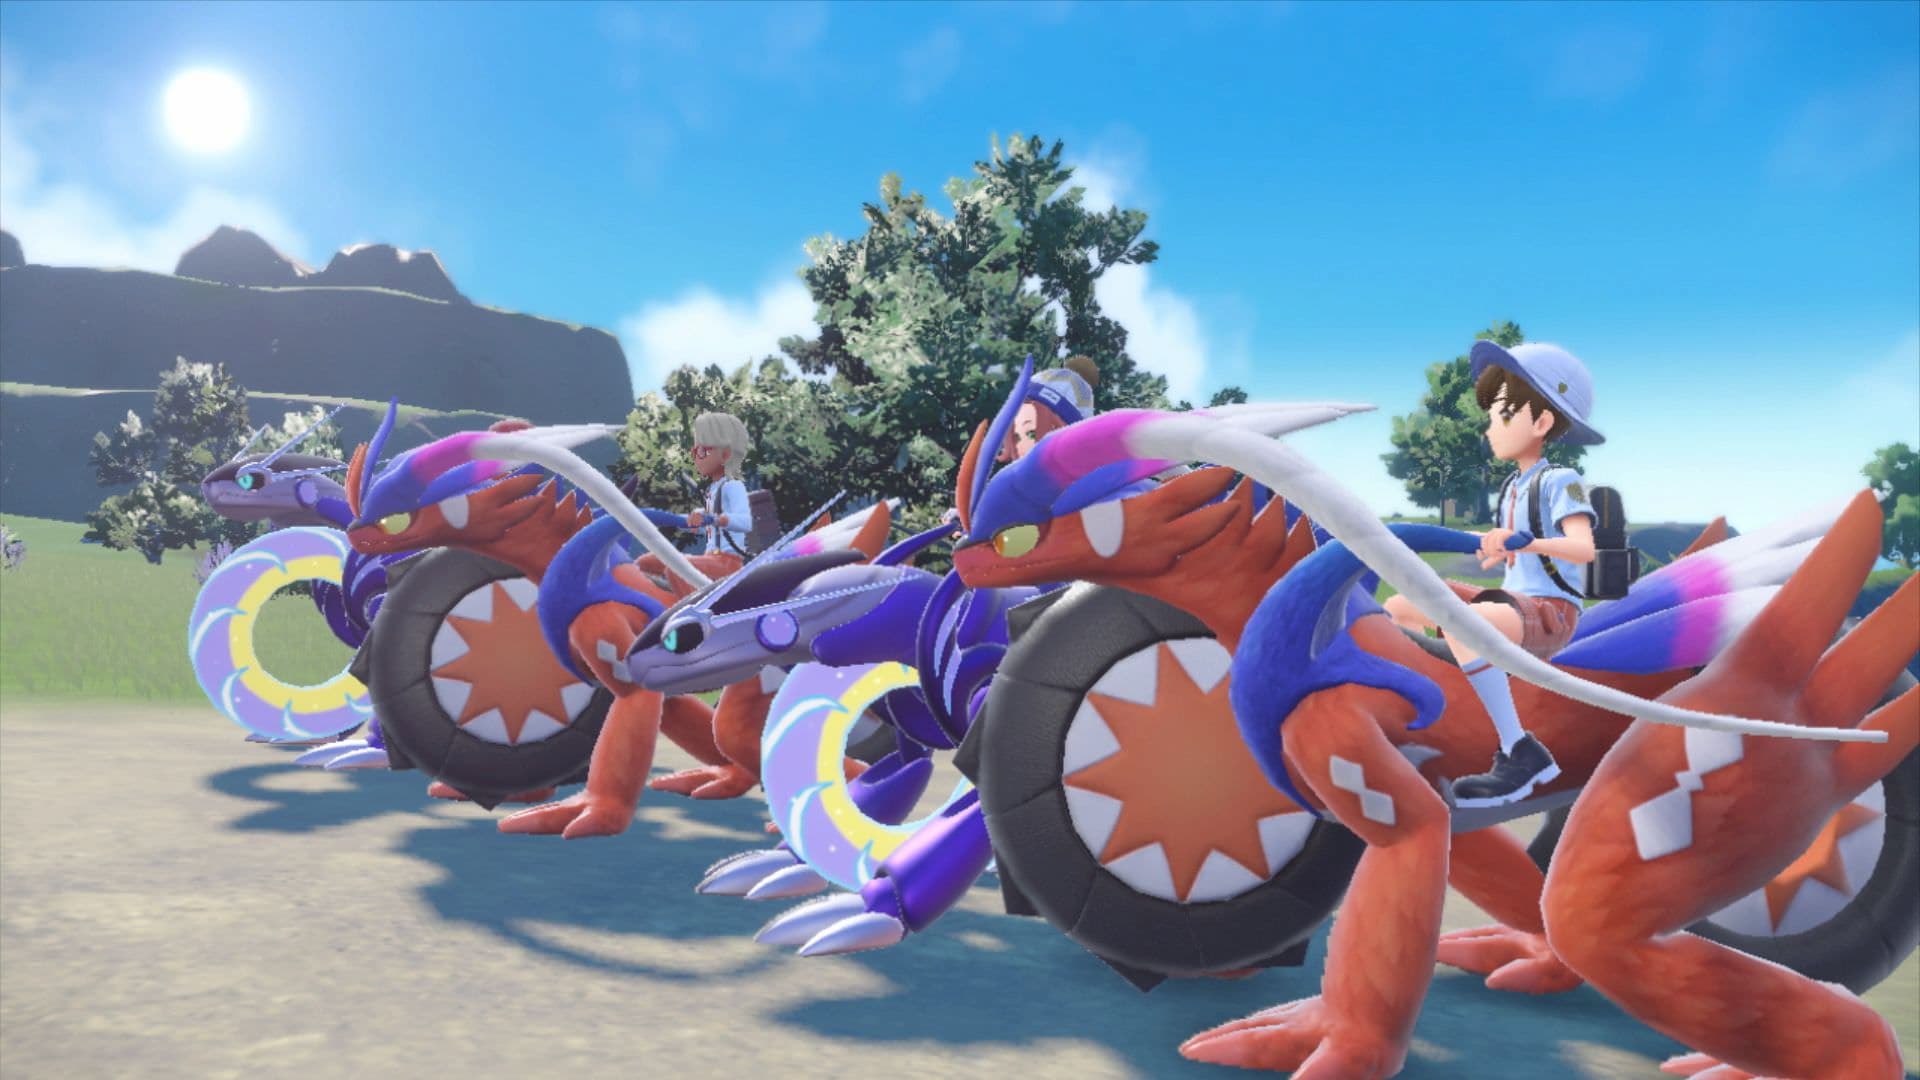 Pokémon Escarlata y Púrpura' presenta tres nuevas criaturas, el equipo  villano y la libertad de su aventura por la región de Paldea